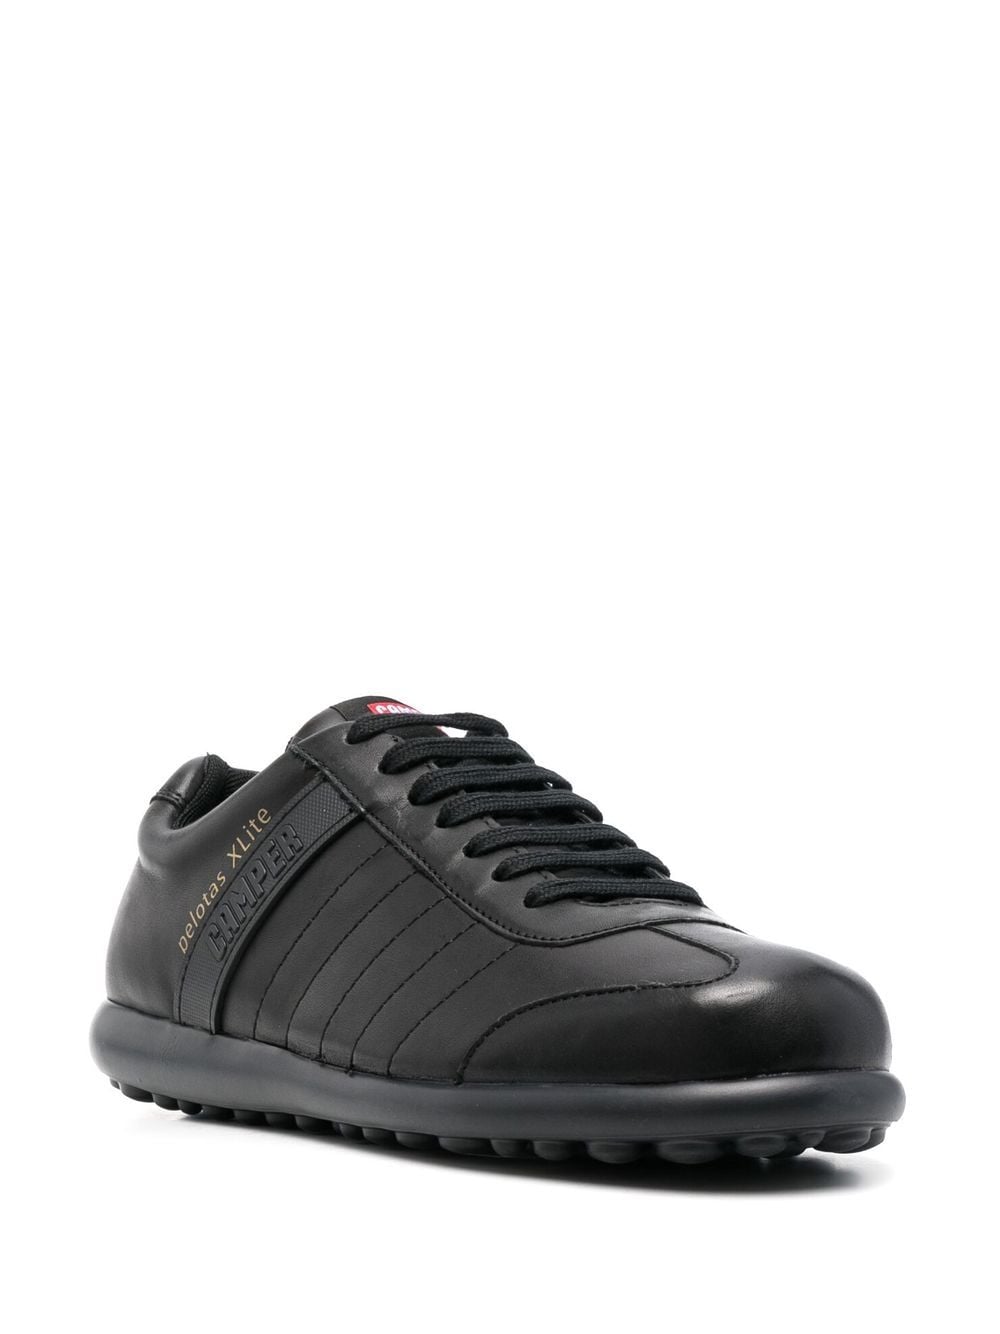 Shop Camper Pelotas Xlite Leather Sneakers In Black